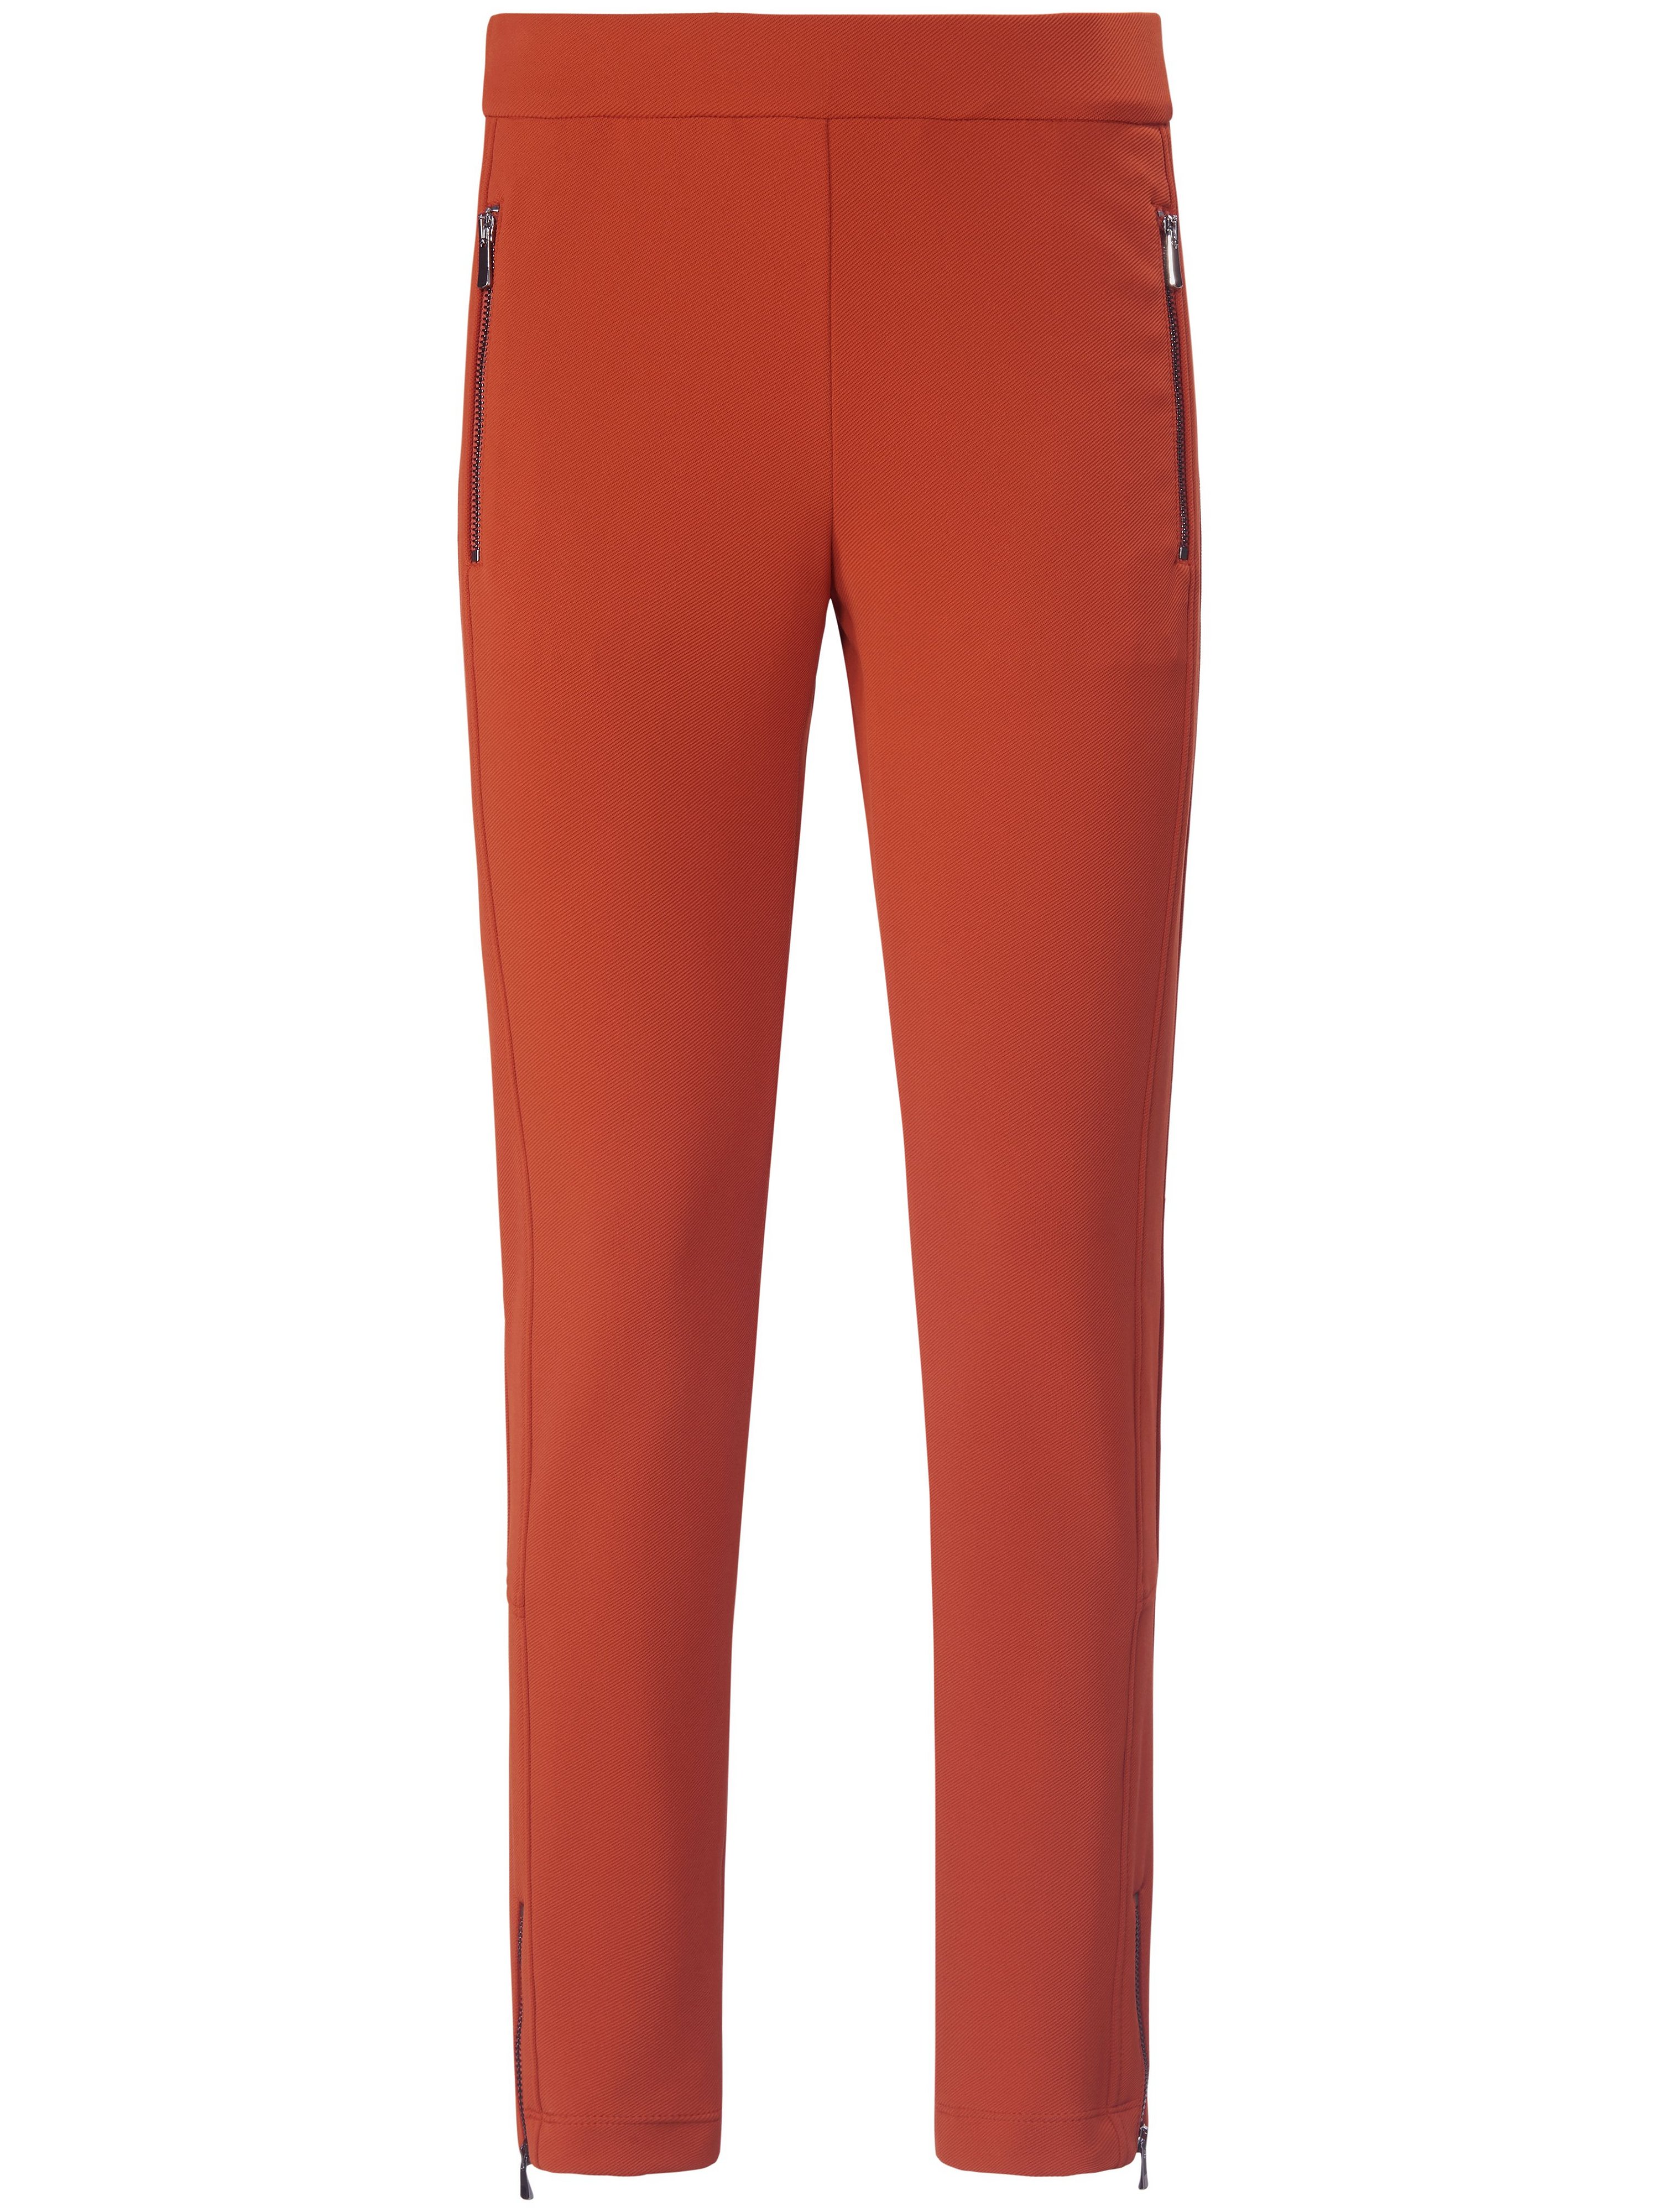 Le pantalon longueur chevilles ligne ultra slim  gardeur orange taille 46